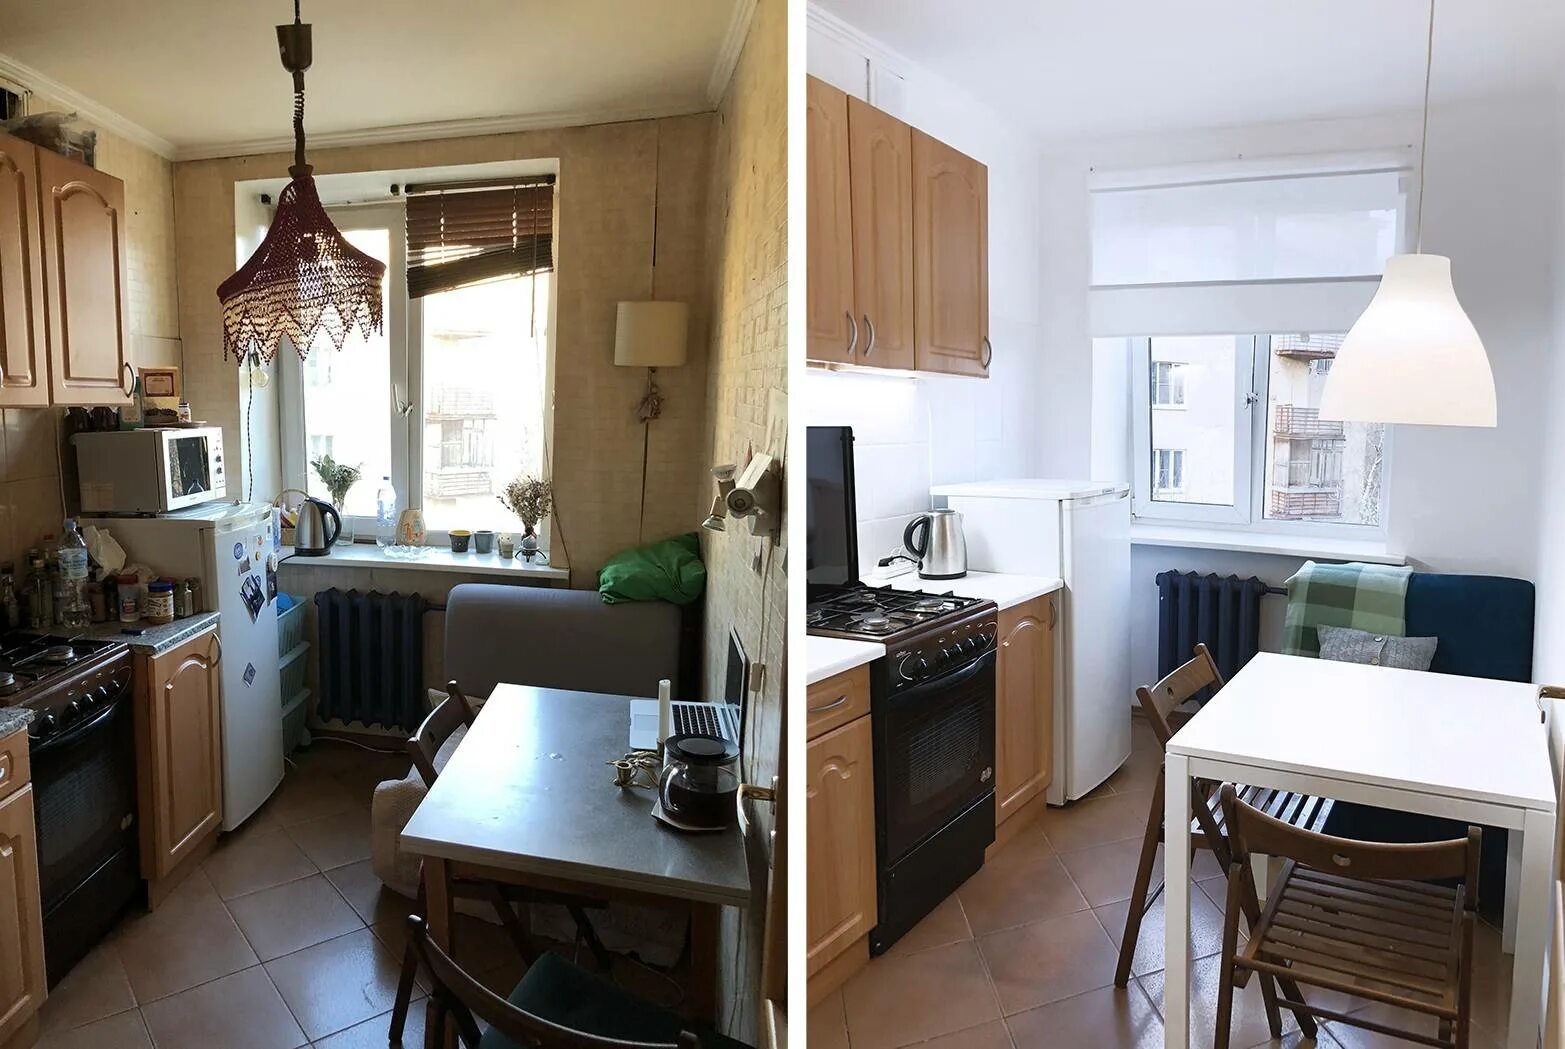 Хоум стейджинг в хрущевке. Хоум стейджинг квартиры до и после. Кухня в старой квартире. Переделка старой квартиры. Кухни хрущевки после ремонта